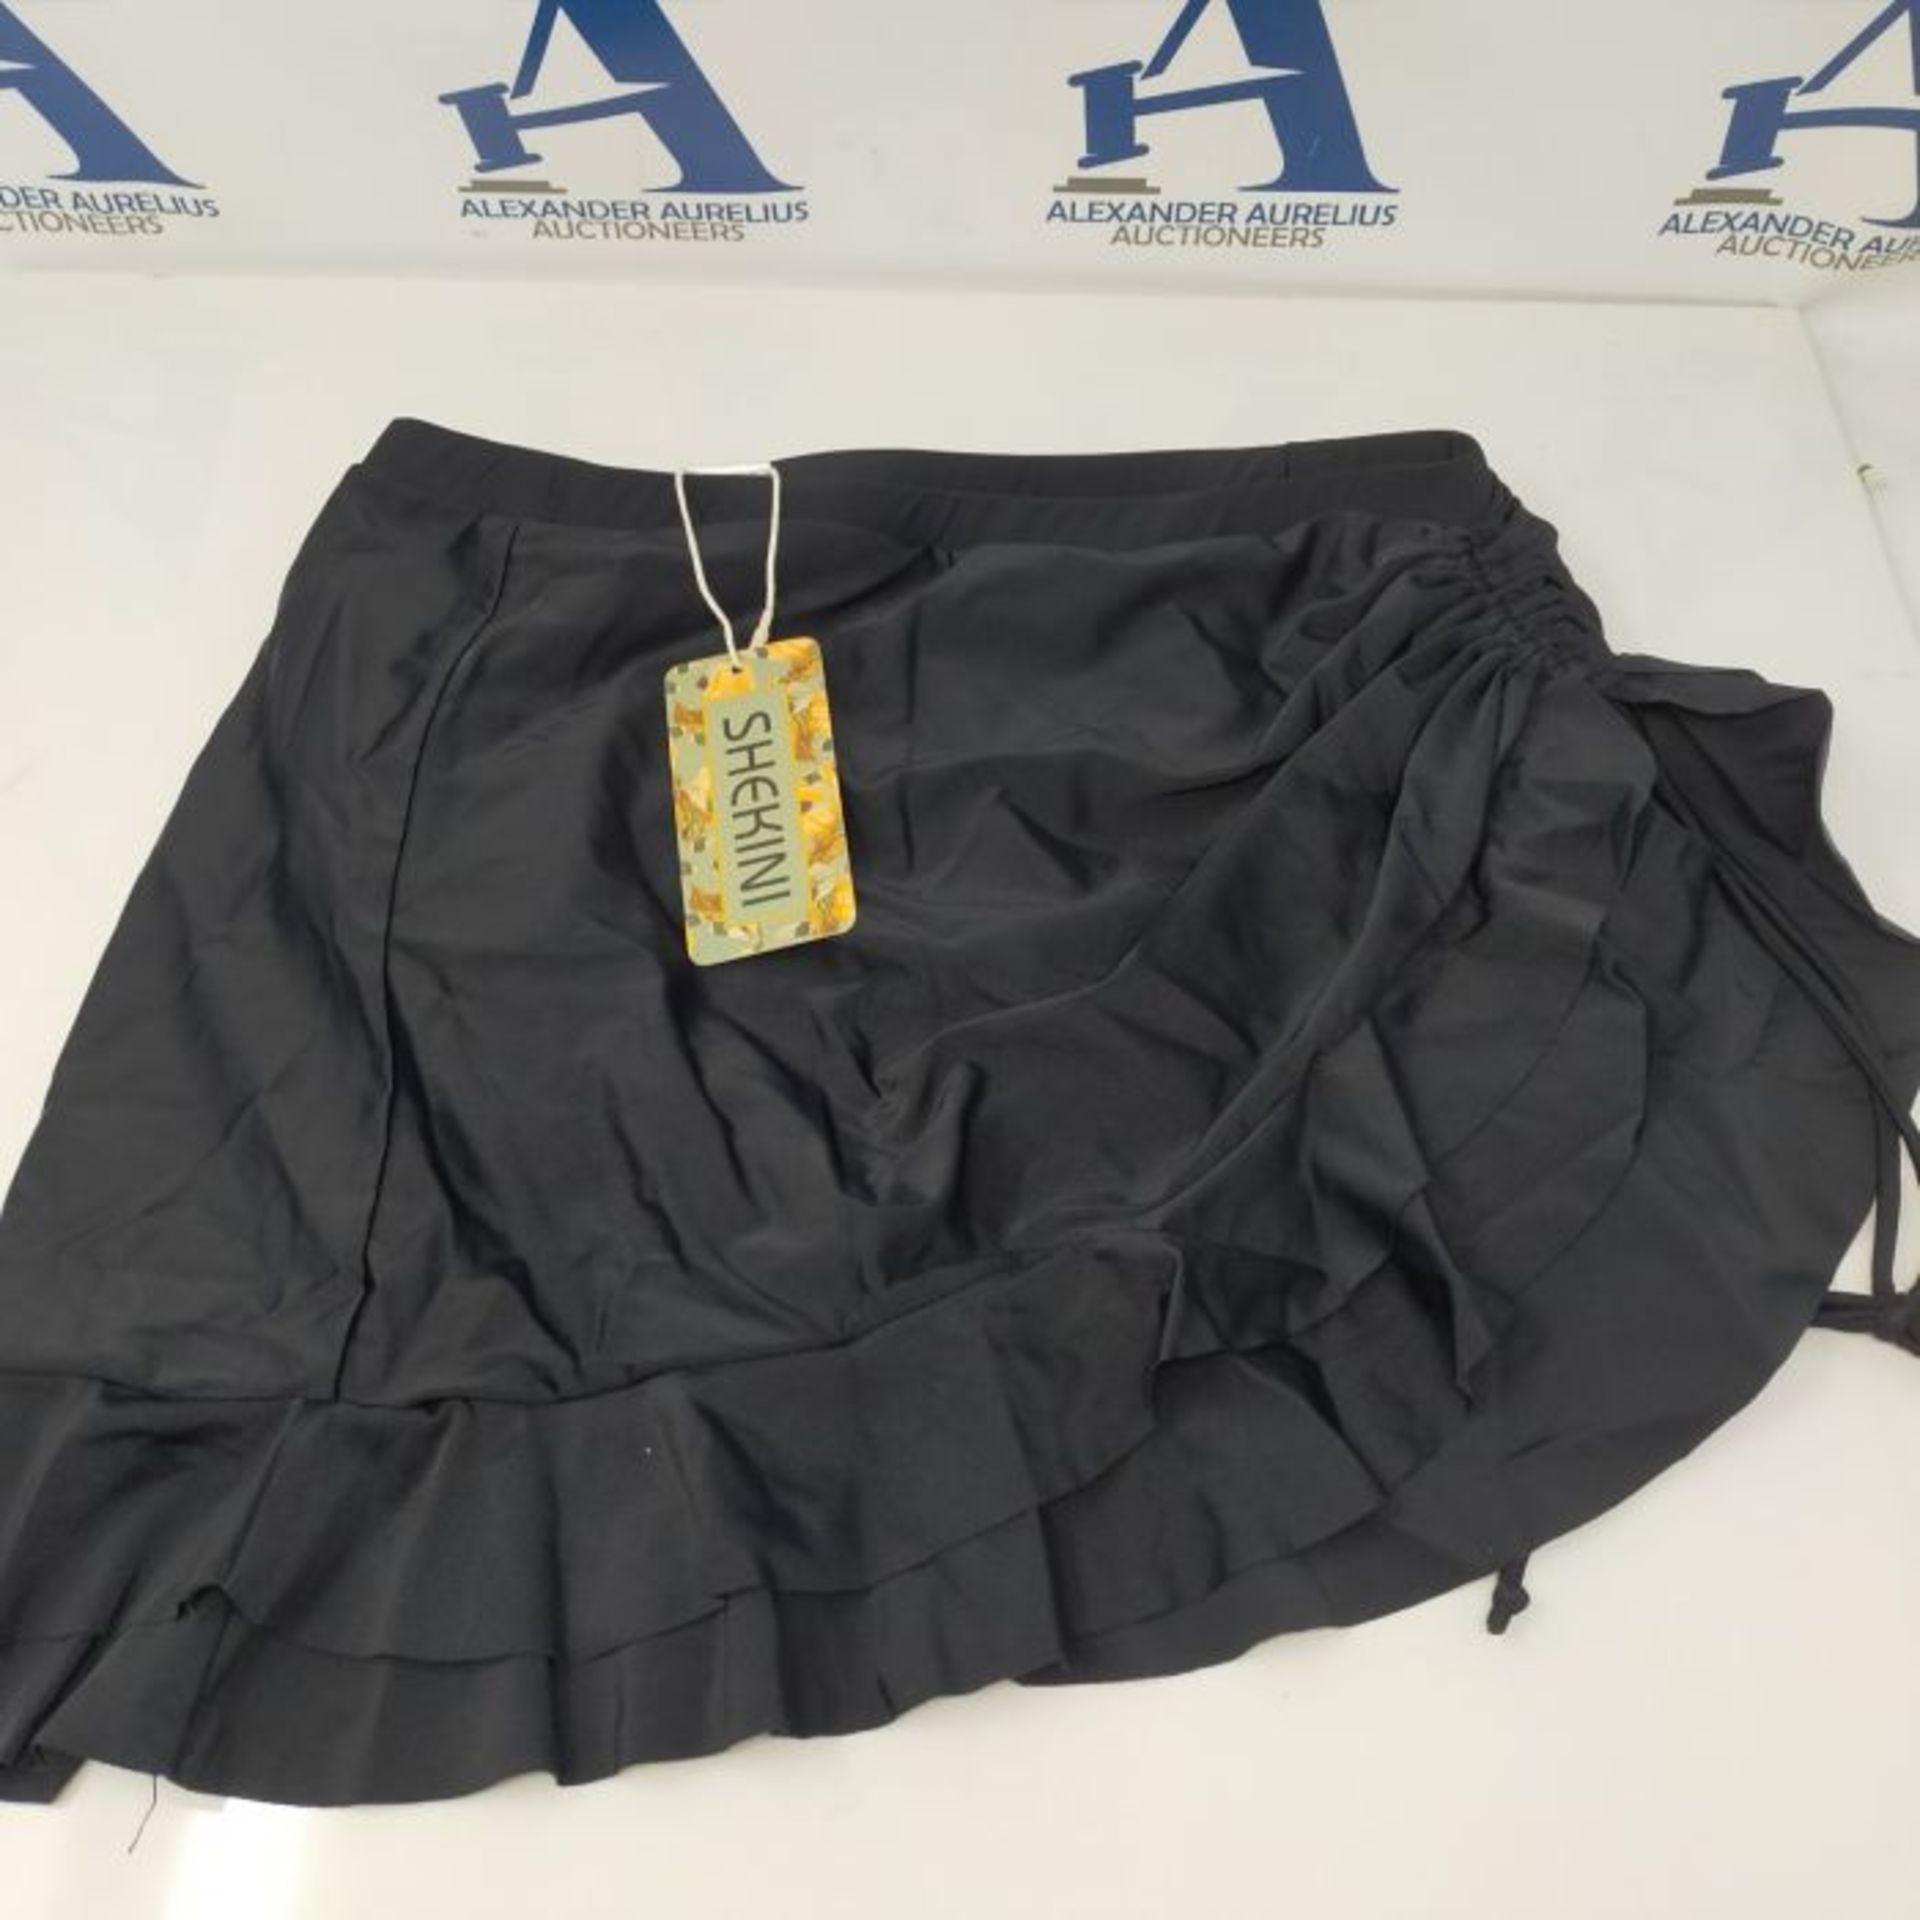 SHEKINI Women s Swimming Skirt Side Drawstring Bottoms Ruffled Short Skirt(L,Black E - Image 2 of 2